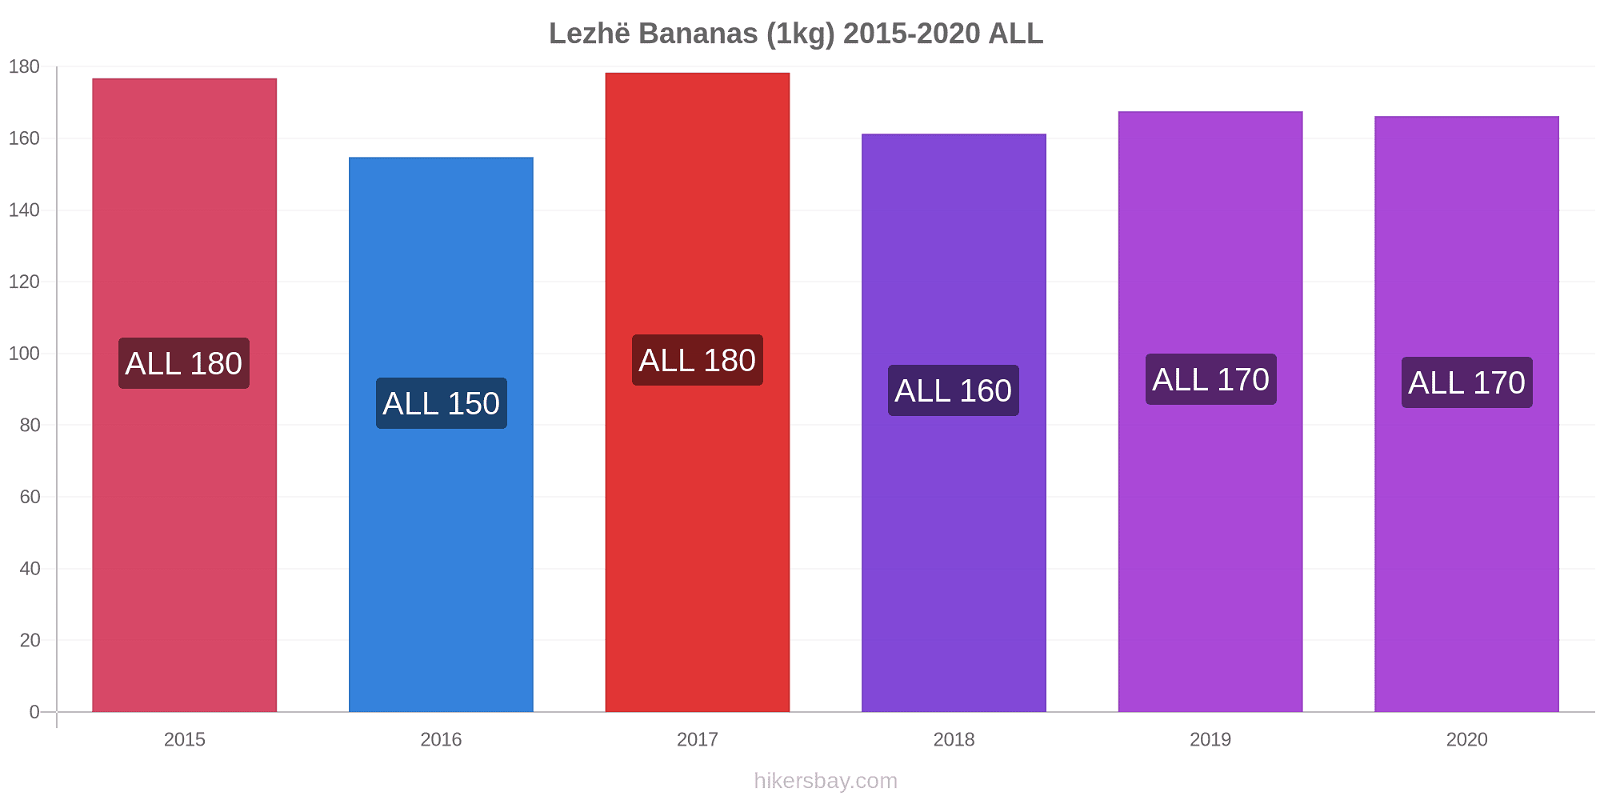 Lezhë variação de preço Banana (1kg) hikersbay.com